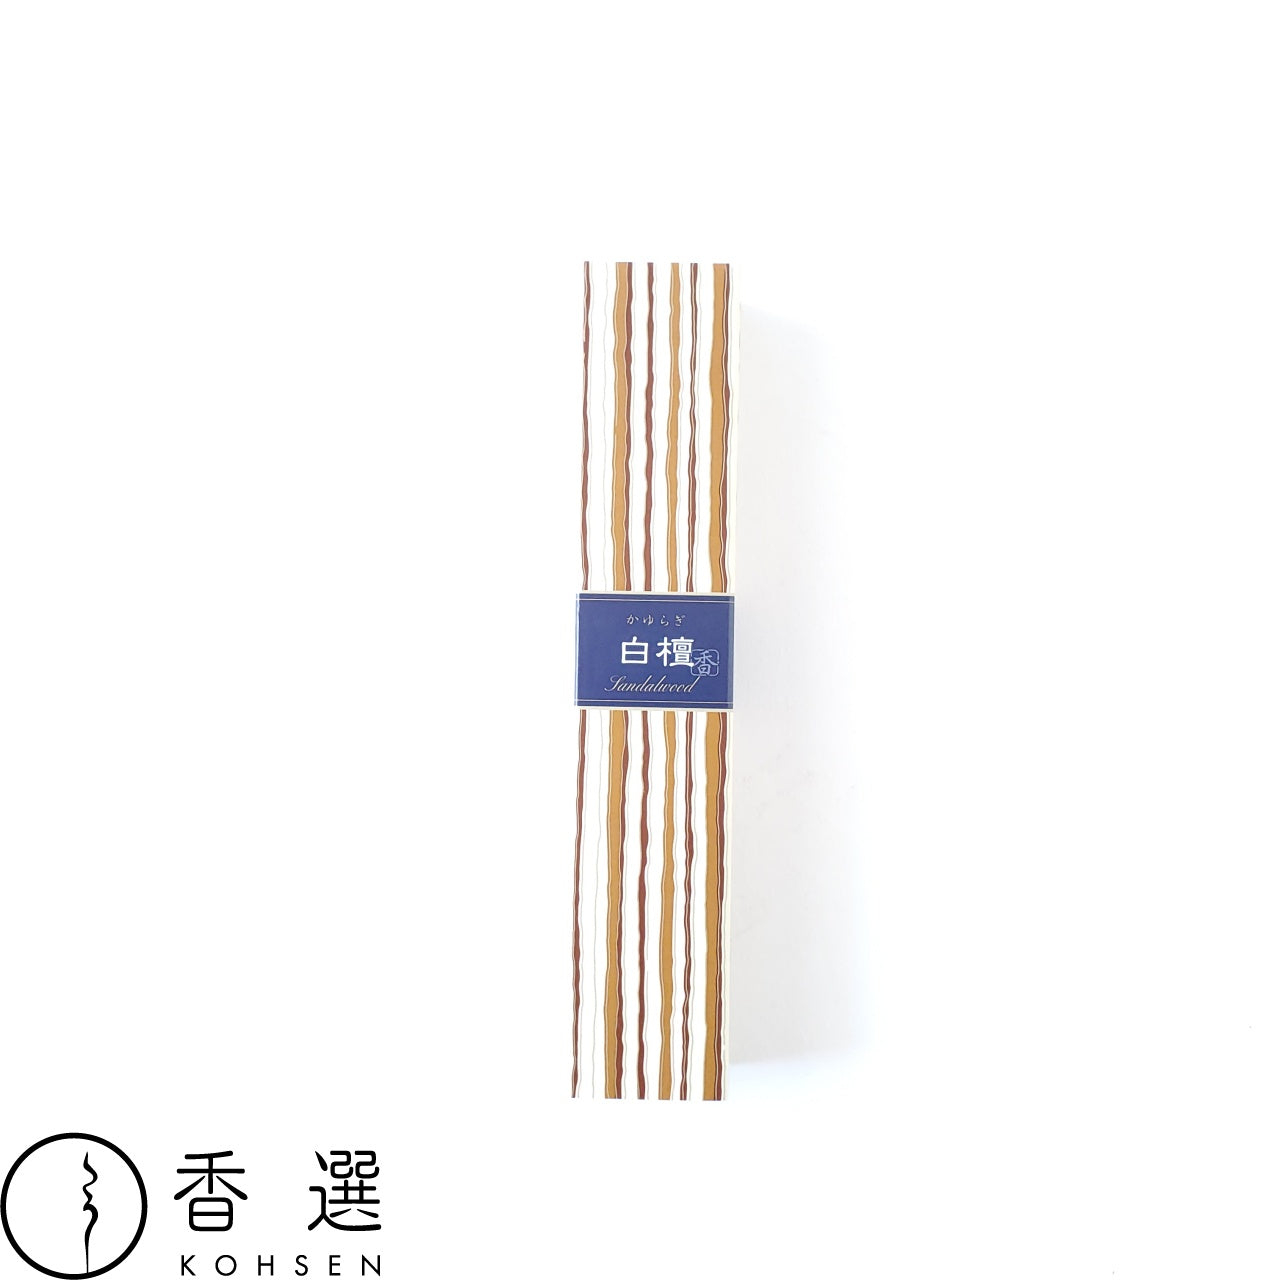 日本香堂 かゆらぎ 白檀 びゃくだん sandalwood お香 お線香 インセンス スティック型 incense 日本製 アロマ メール便送料無料